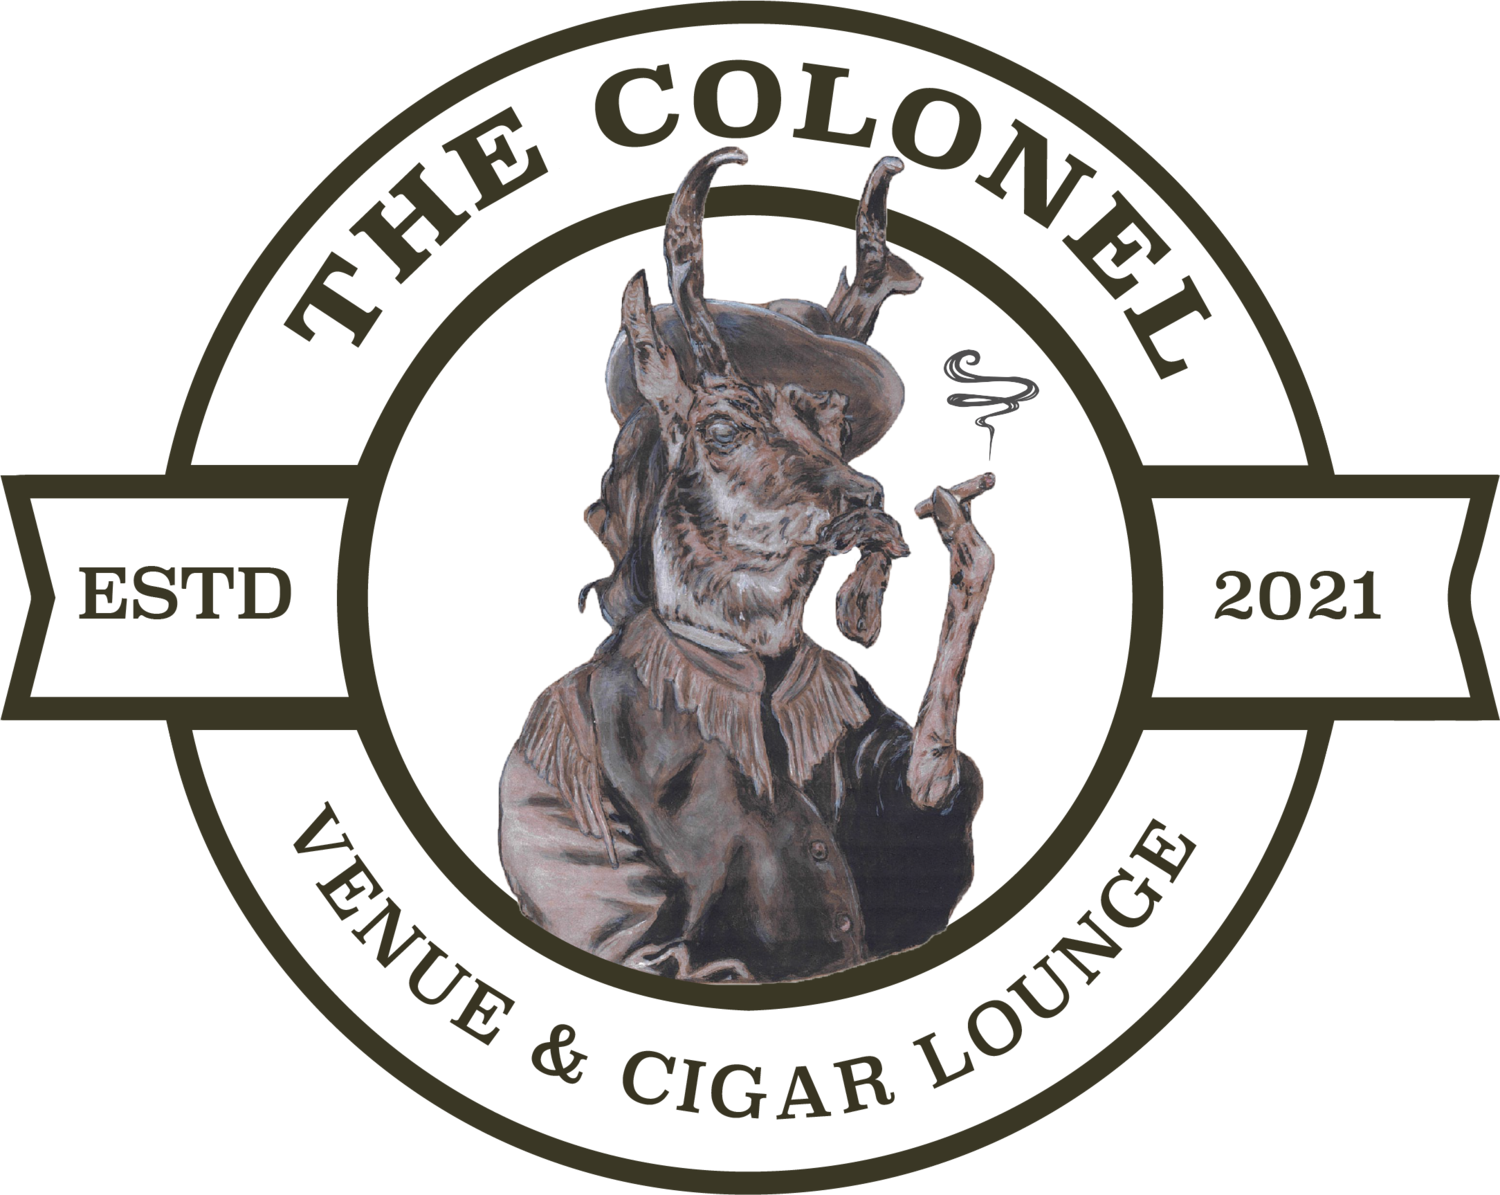 The Colonel Venue & Cigar Lounge